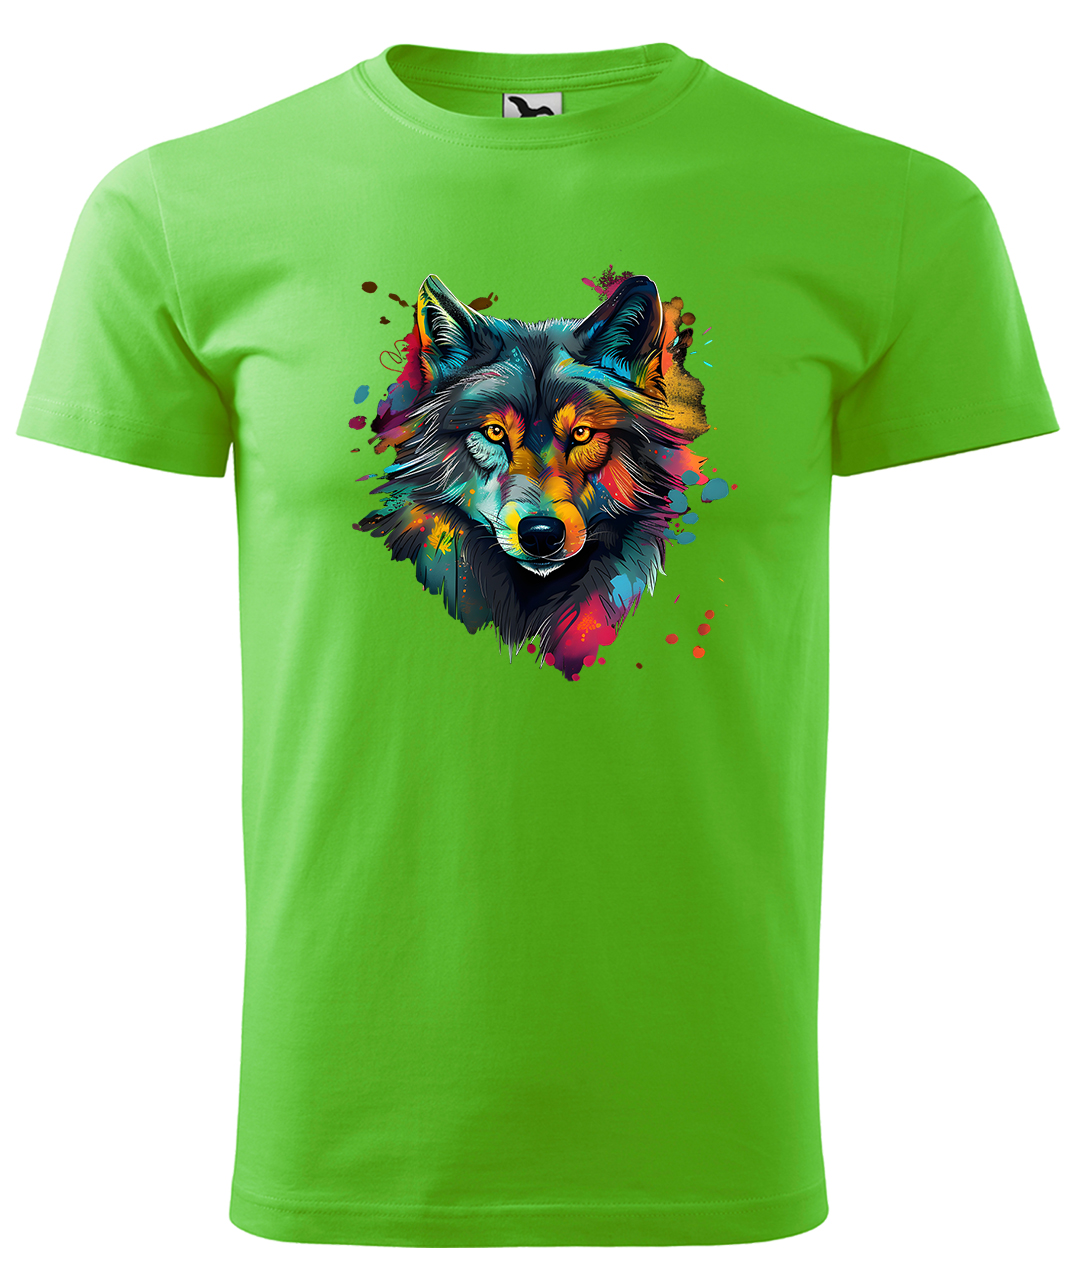 Dětské tričko s vlkem - Malovaný vlk Velikost: 12 let / 158 cm, Barva: Apple Green (92), Délka rukávu: Krátký rukáv